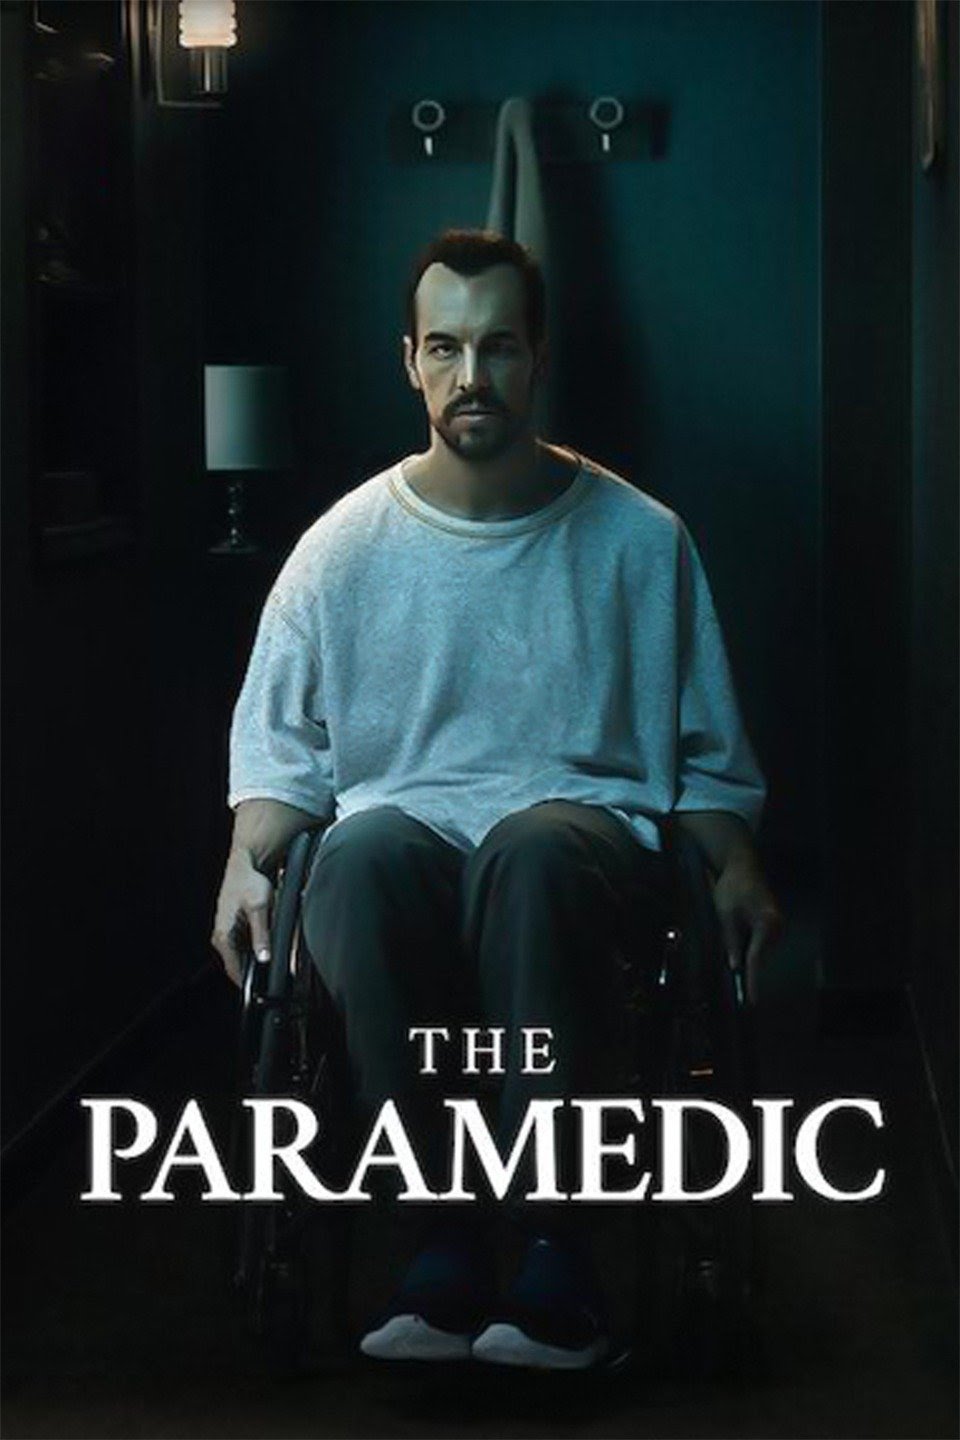 [ฝรั่ง] The Paramedic (2020) ฆ่าให้สมแค้น [1080p] [NETFLIX] [พากย์สเปน 5.1 + เสียงอังกฤษ 5.1] [Soundtrack บรรยายไทย] [เสียงอังกฤษ + ซับไทย] [PANDAFILE]